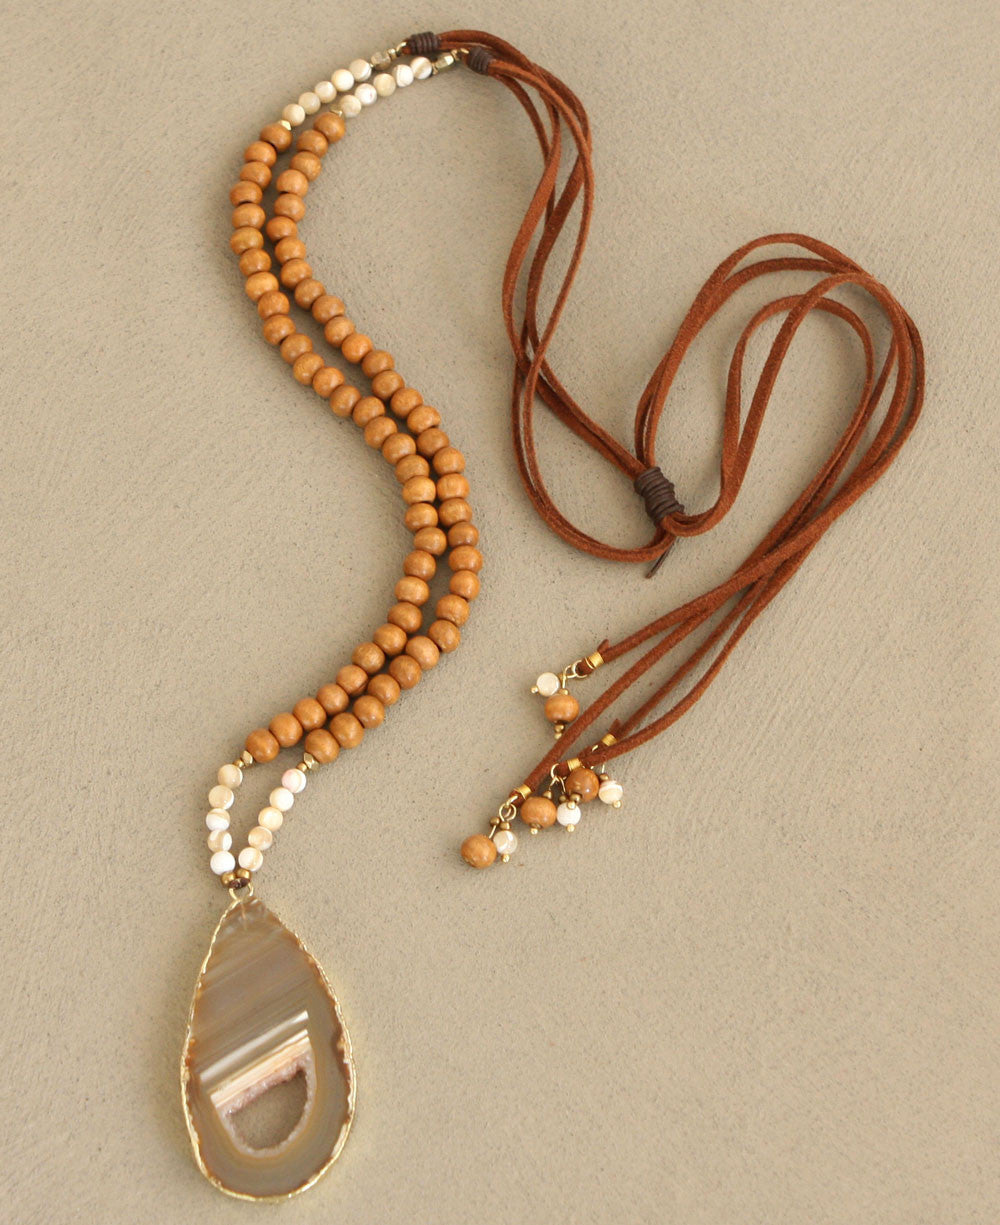 Enchanted Amulet Necklace